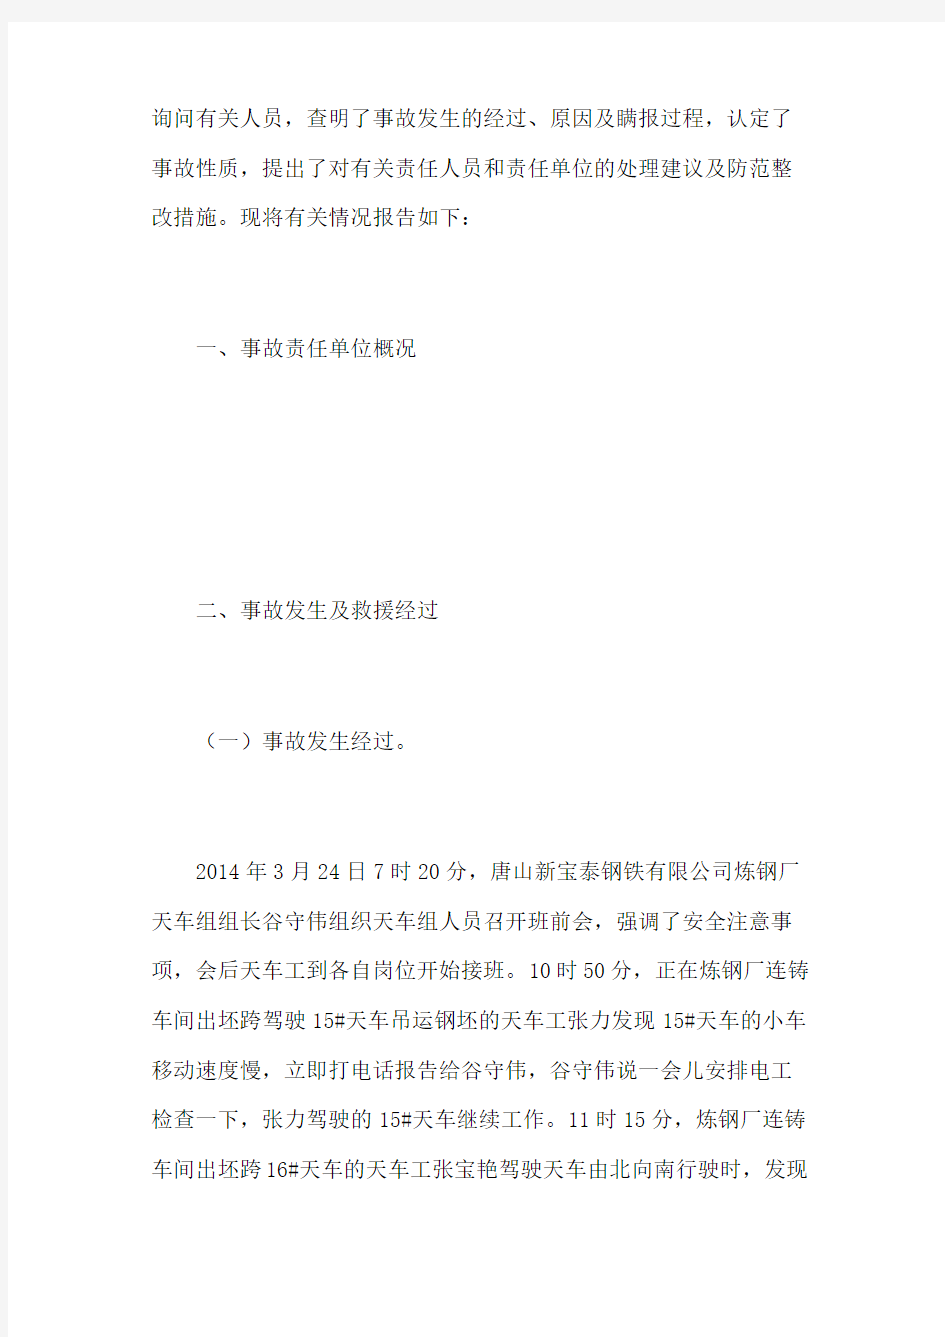 唐山新宝泰钢铁公司“”机械伤害瞒报事故调查报告